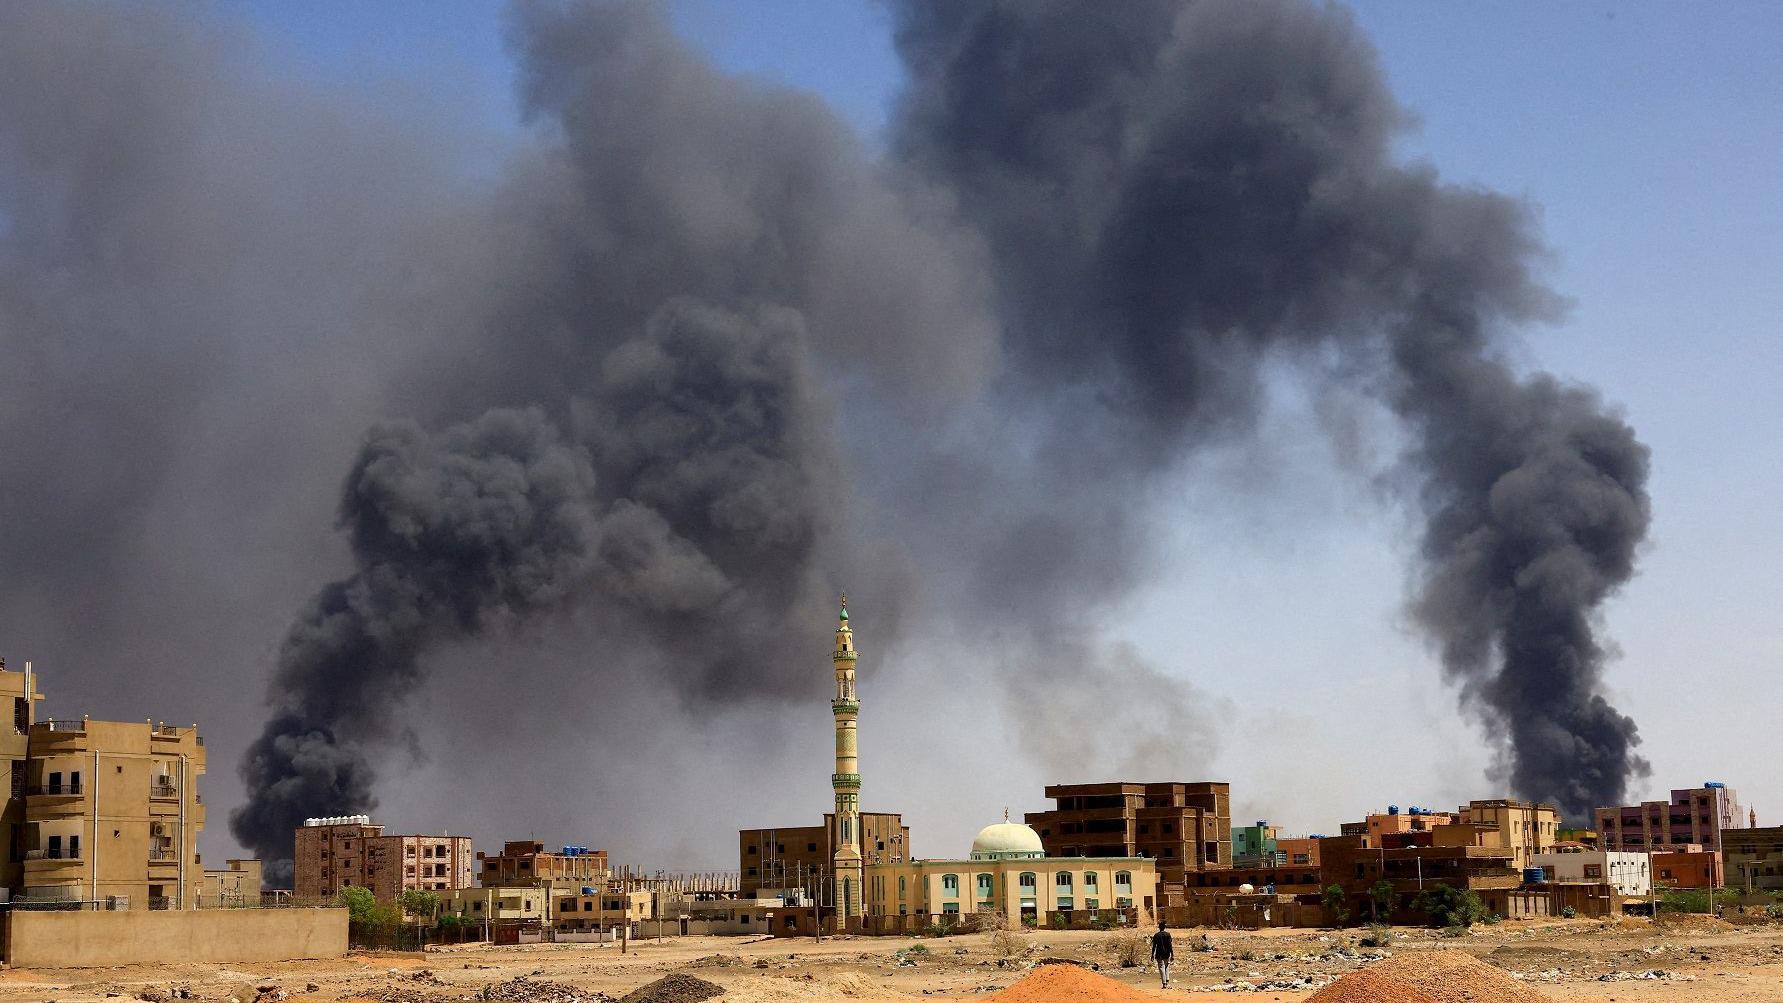 تصاعد الدخان فوق المباني بعد قصف جوي خلال اشتباكات بين قوات الدعم السريع والجيش في الخرطوم